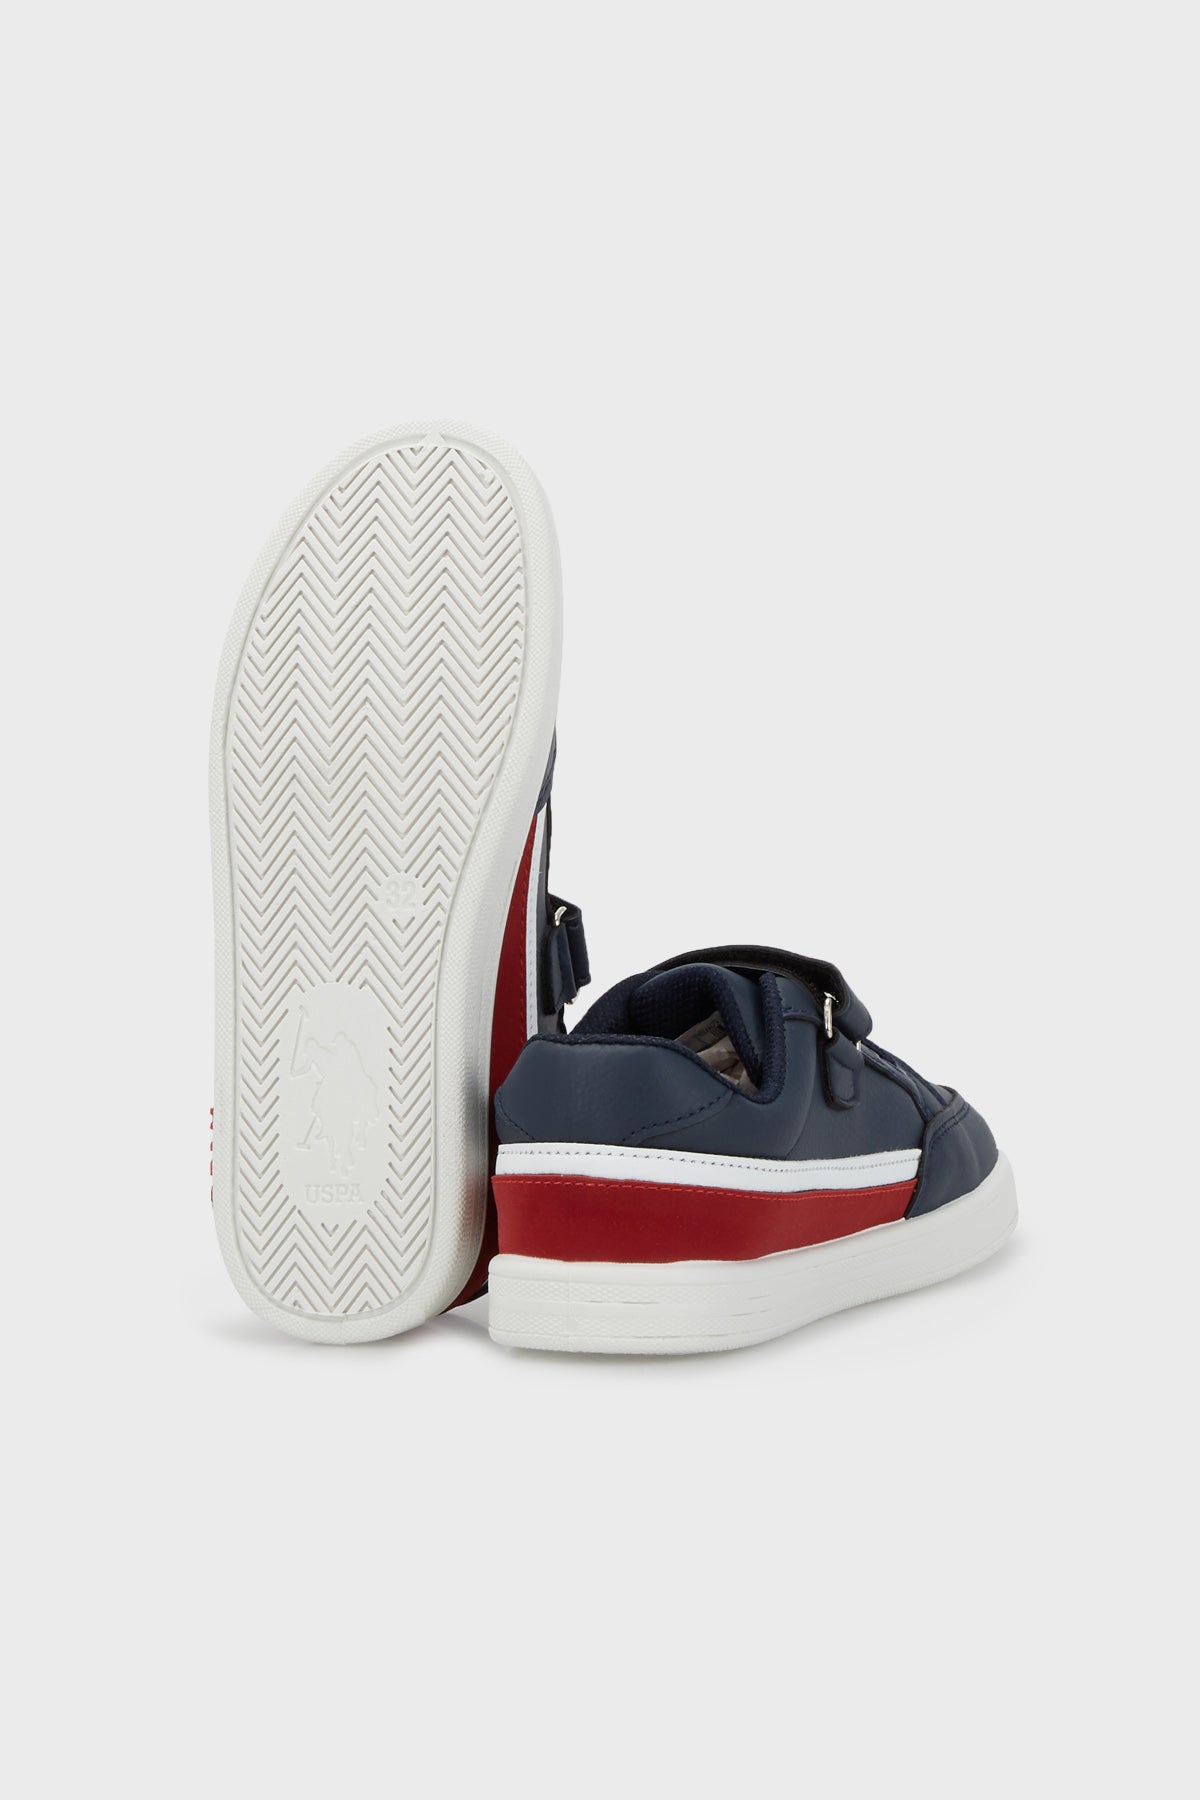 U.S. Polo Assn Cırtlı Sneaker Erkek Çocuk Ayakkabı JAMAL 2PR LACİVERT